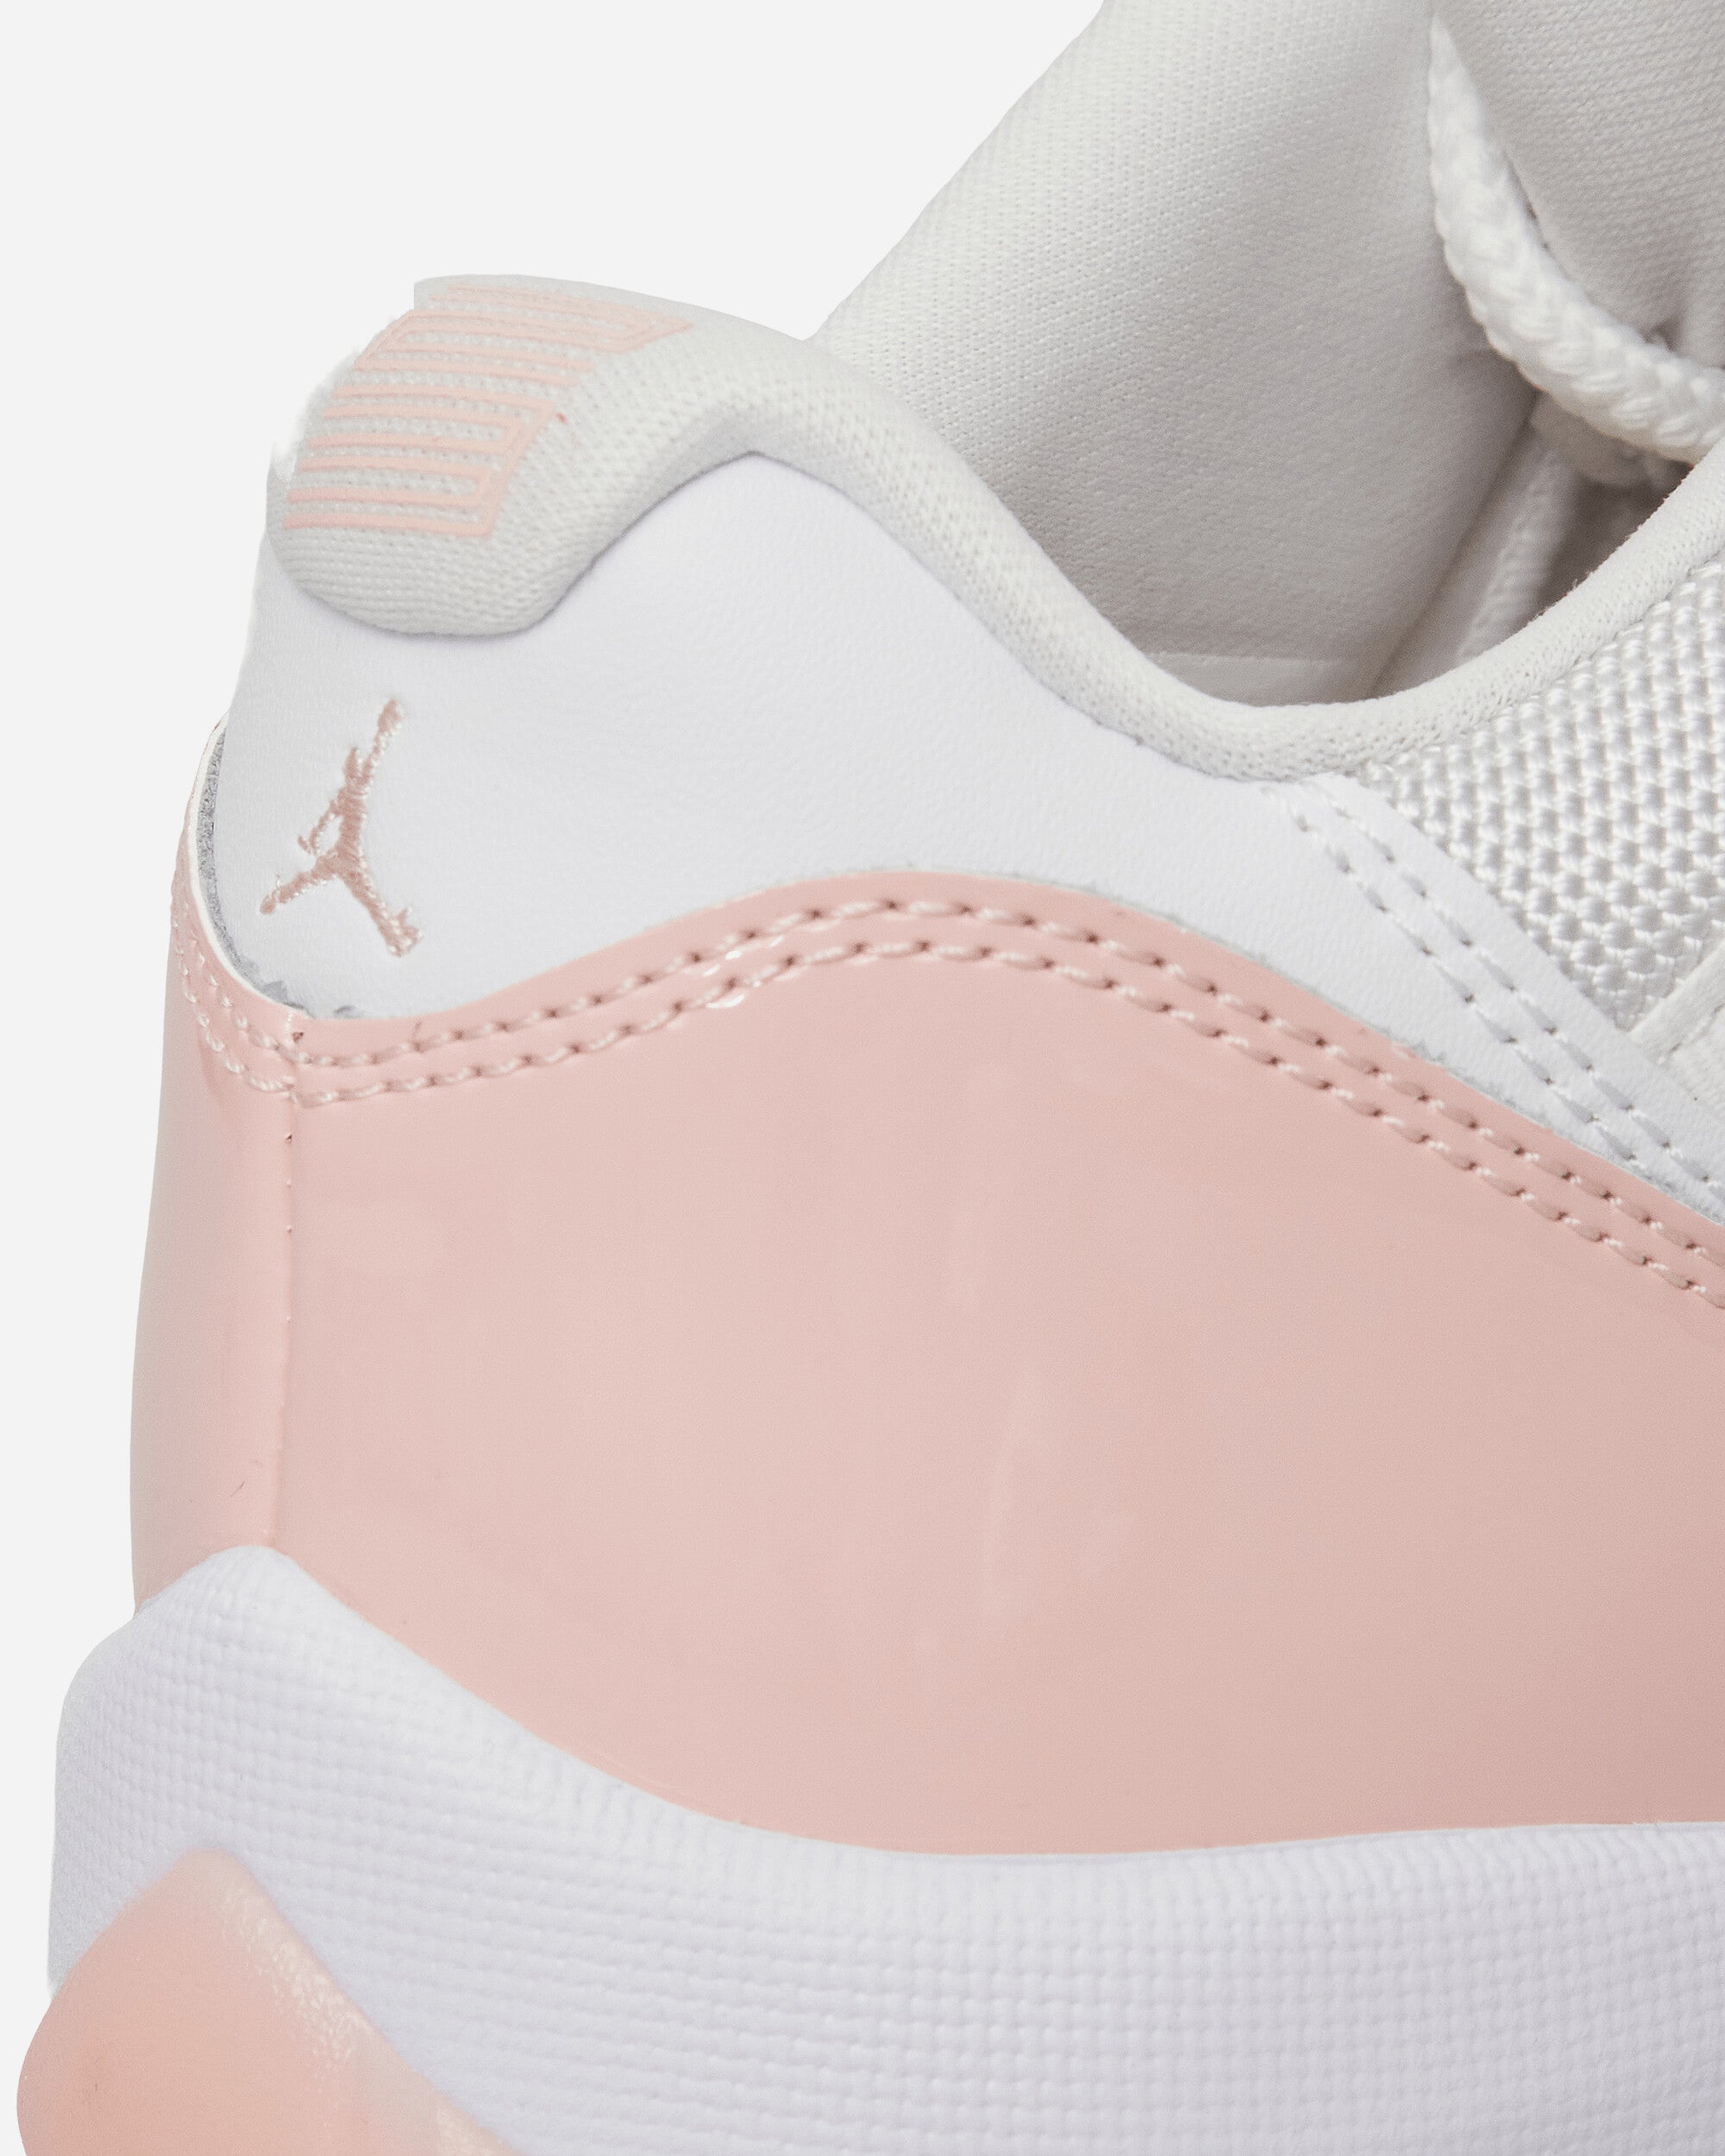 Nike Jordan Wmns Air Jordan 11 Retro Low White/Legend Pink Sneakers Low AH7860-160